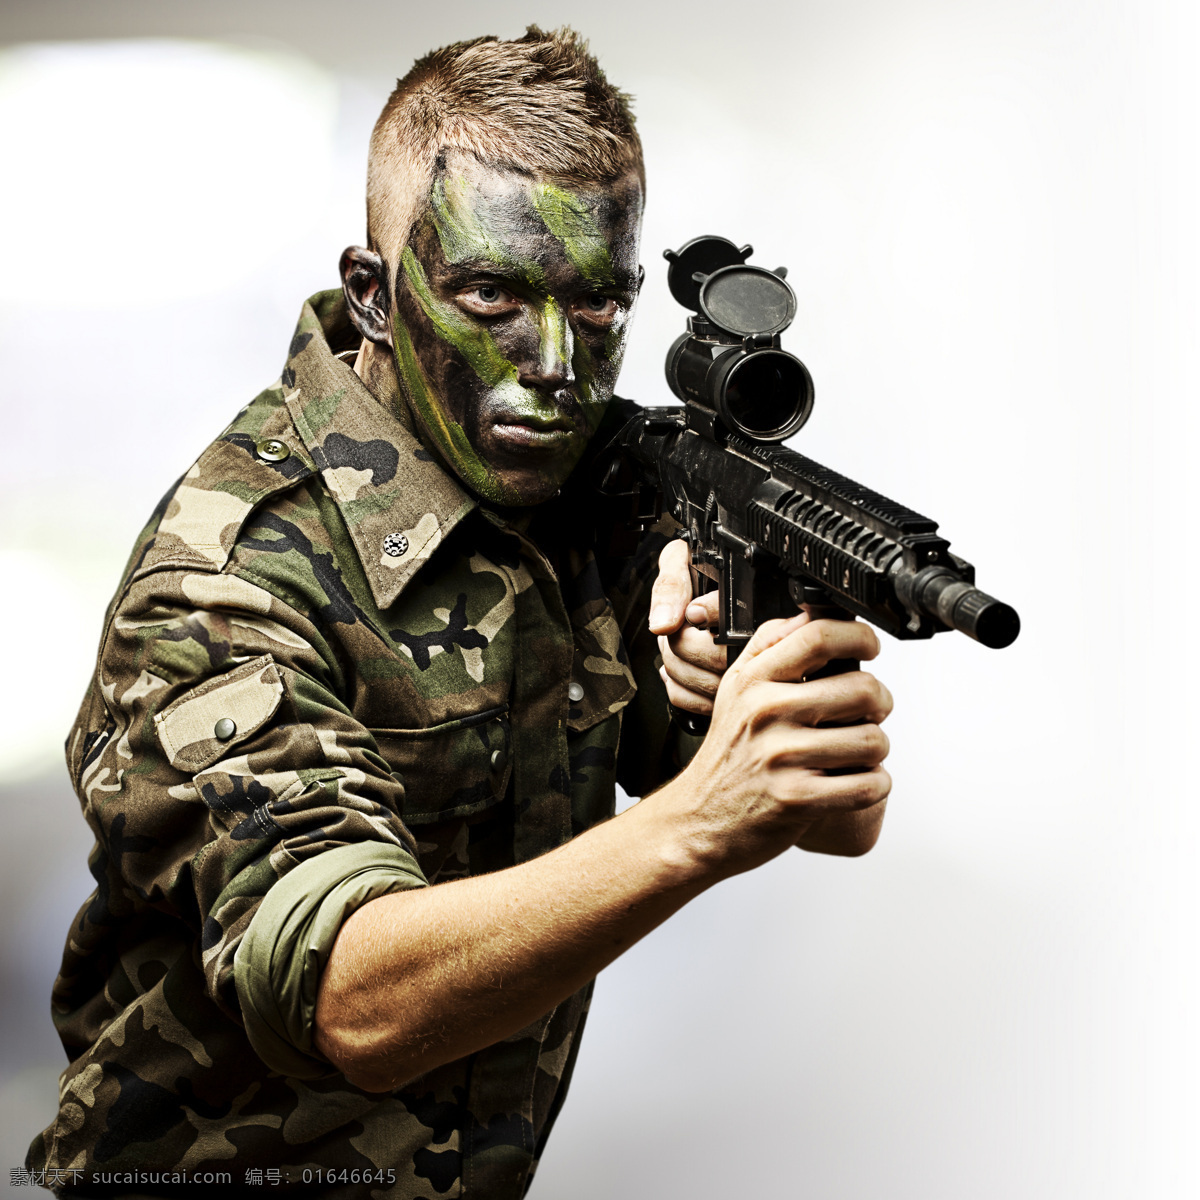 一名 枪 士兵图片 士兵 军人 战士 机枪 军事武器 陆军 军事 职业人物 男人图片 人物图片